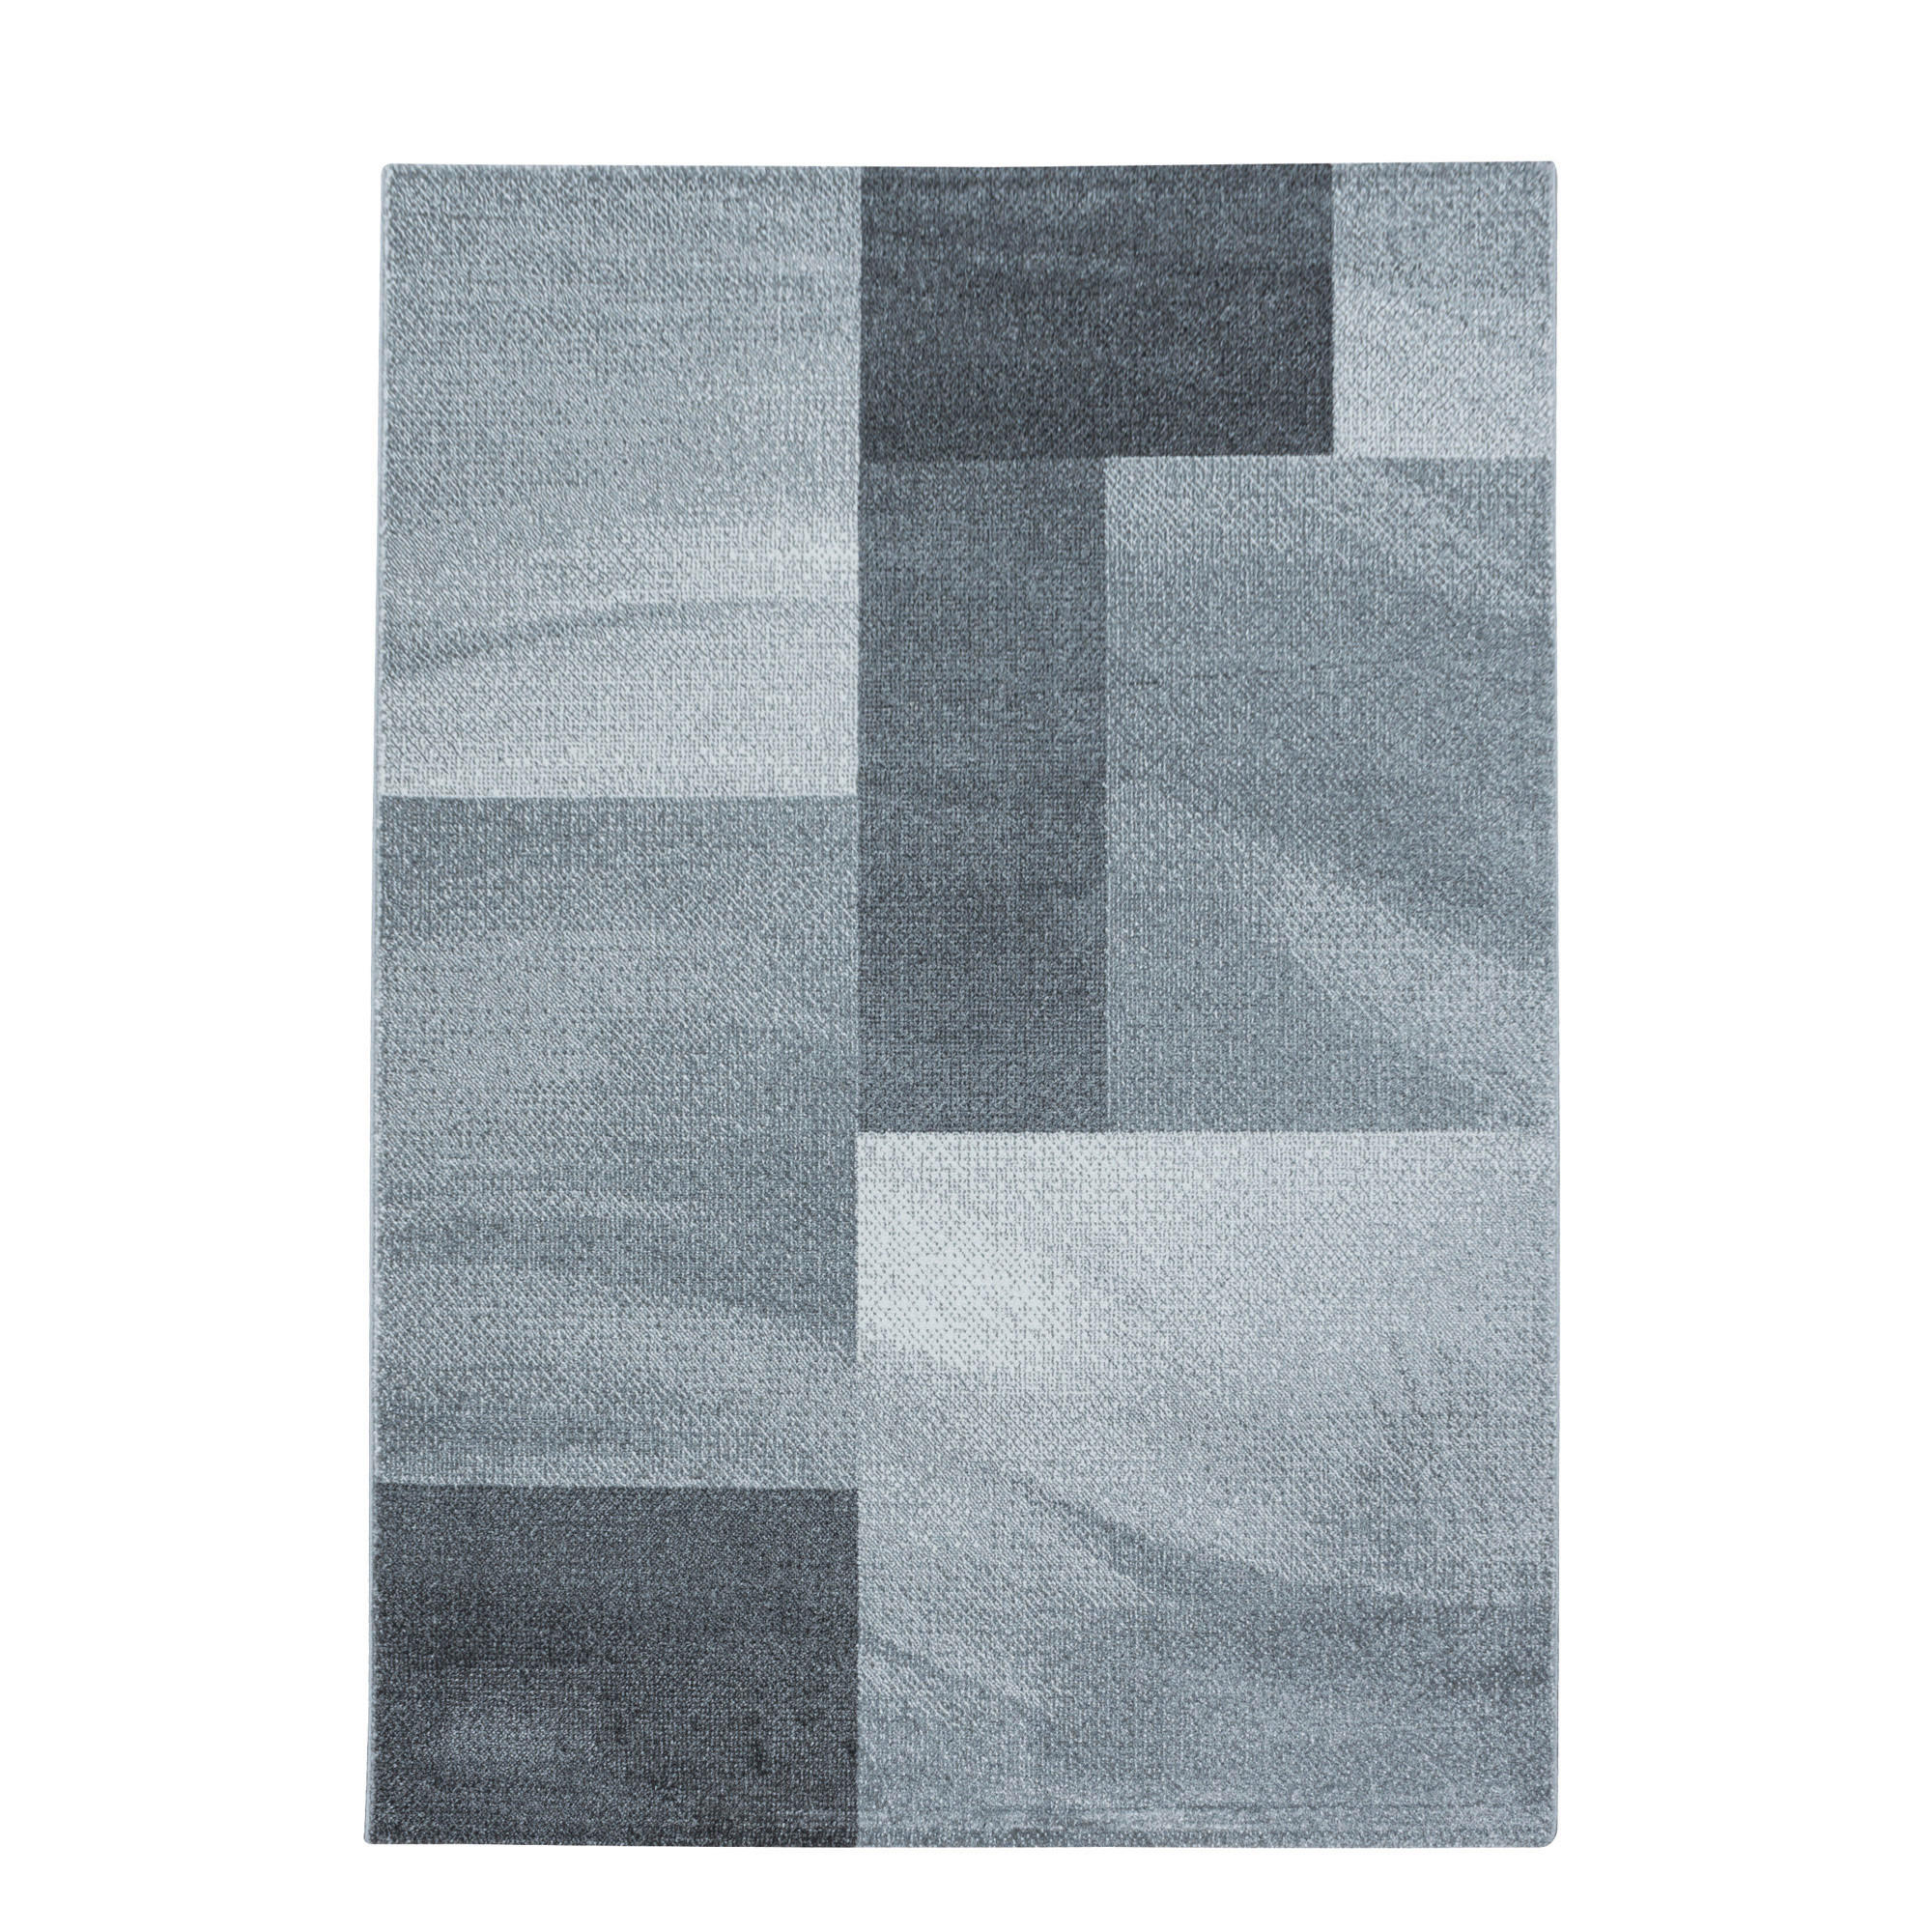 LÄUFER  80/250 cm  Grau  - Grau, Basics, Textil (80/250cm) - Novel